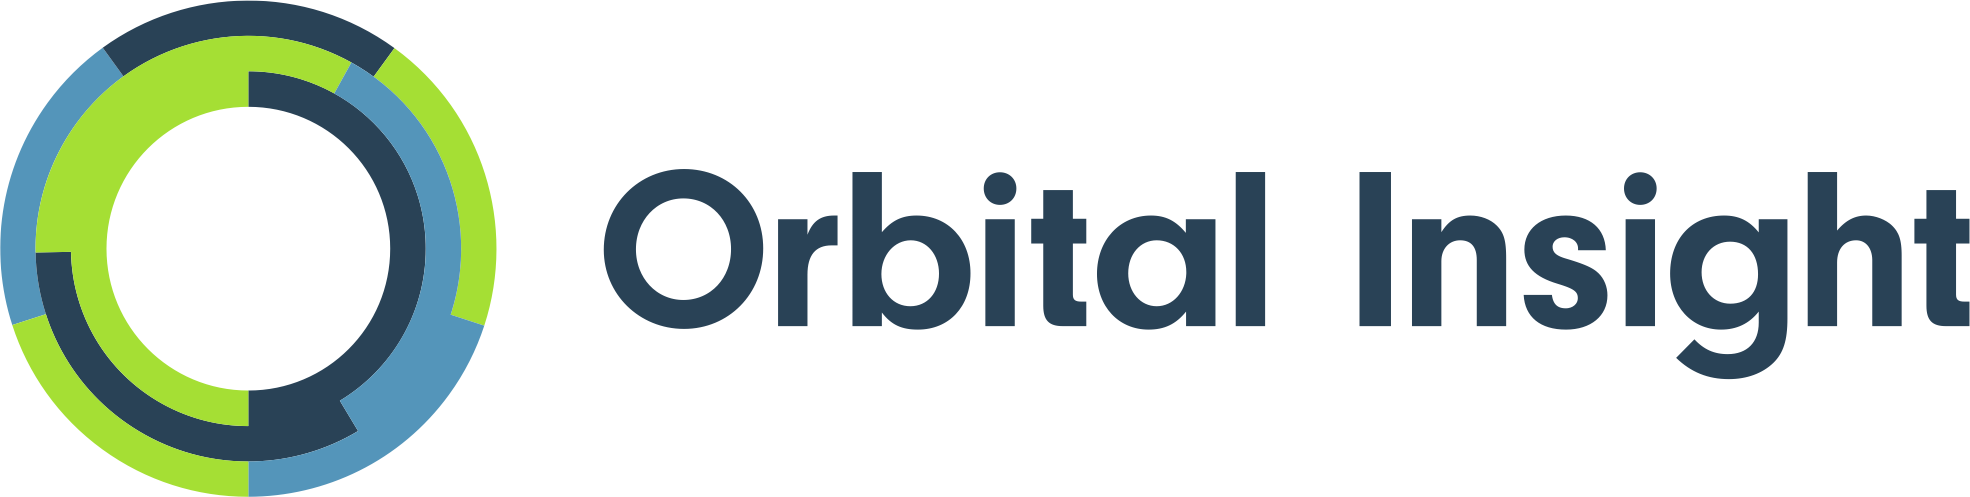 sponsor-orbitalinsight